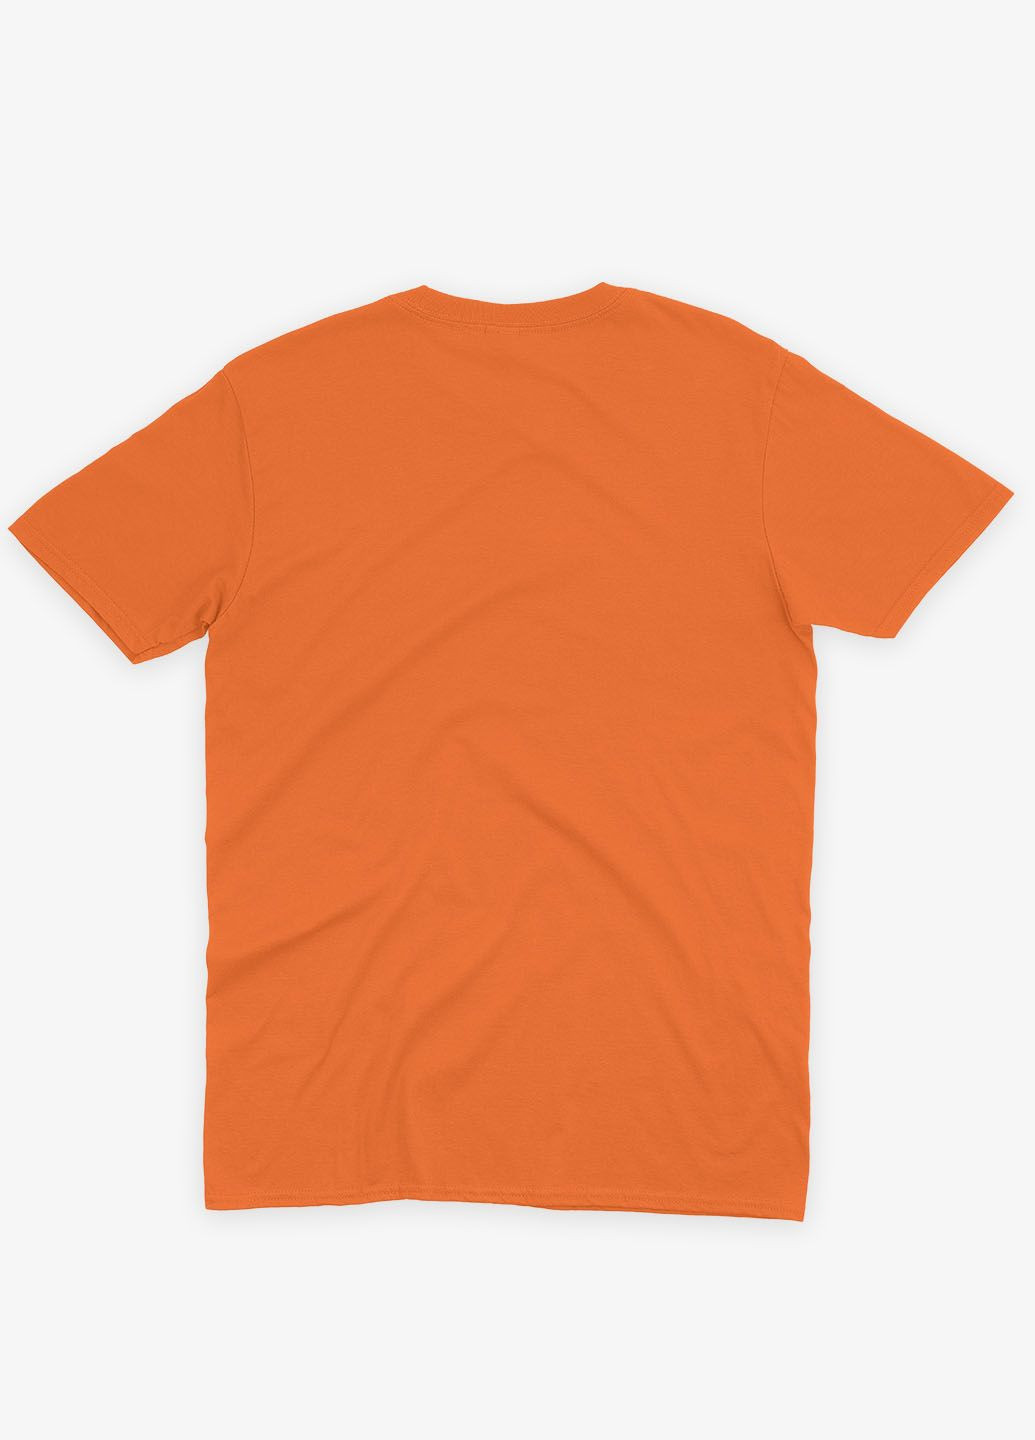 Оранжевая демисезонная футболка для мальчика с принтом супезлоды - танос (ts001-1-ora-006-019-003-b) Modno